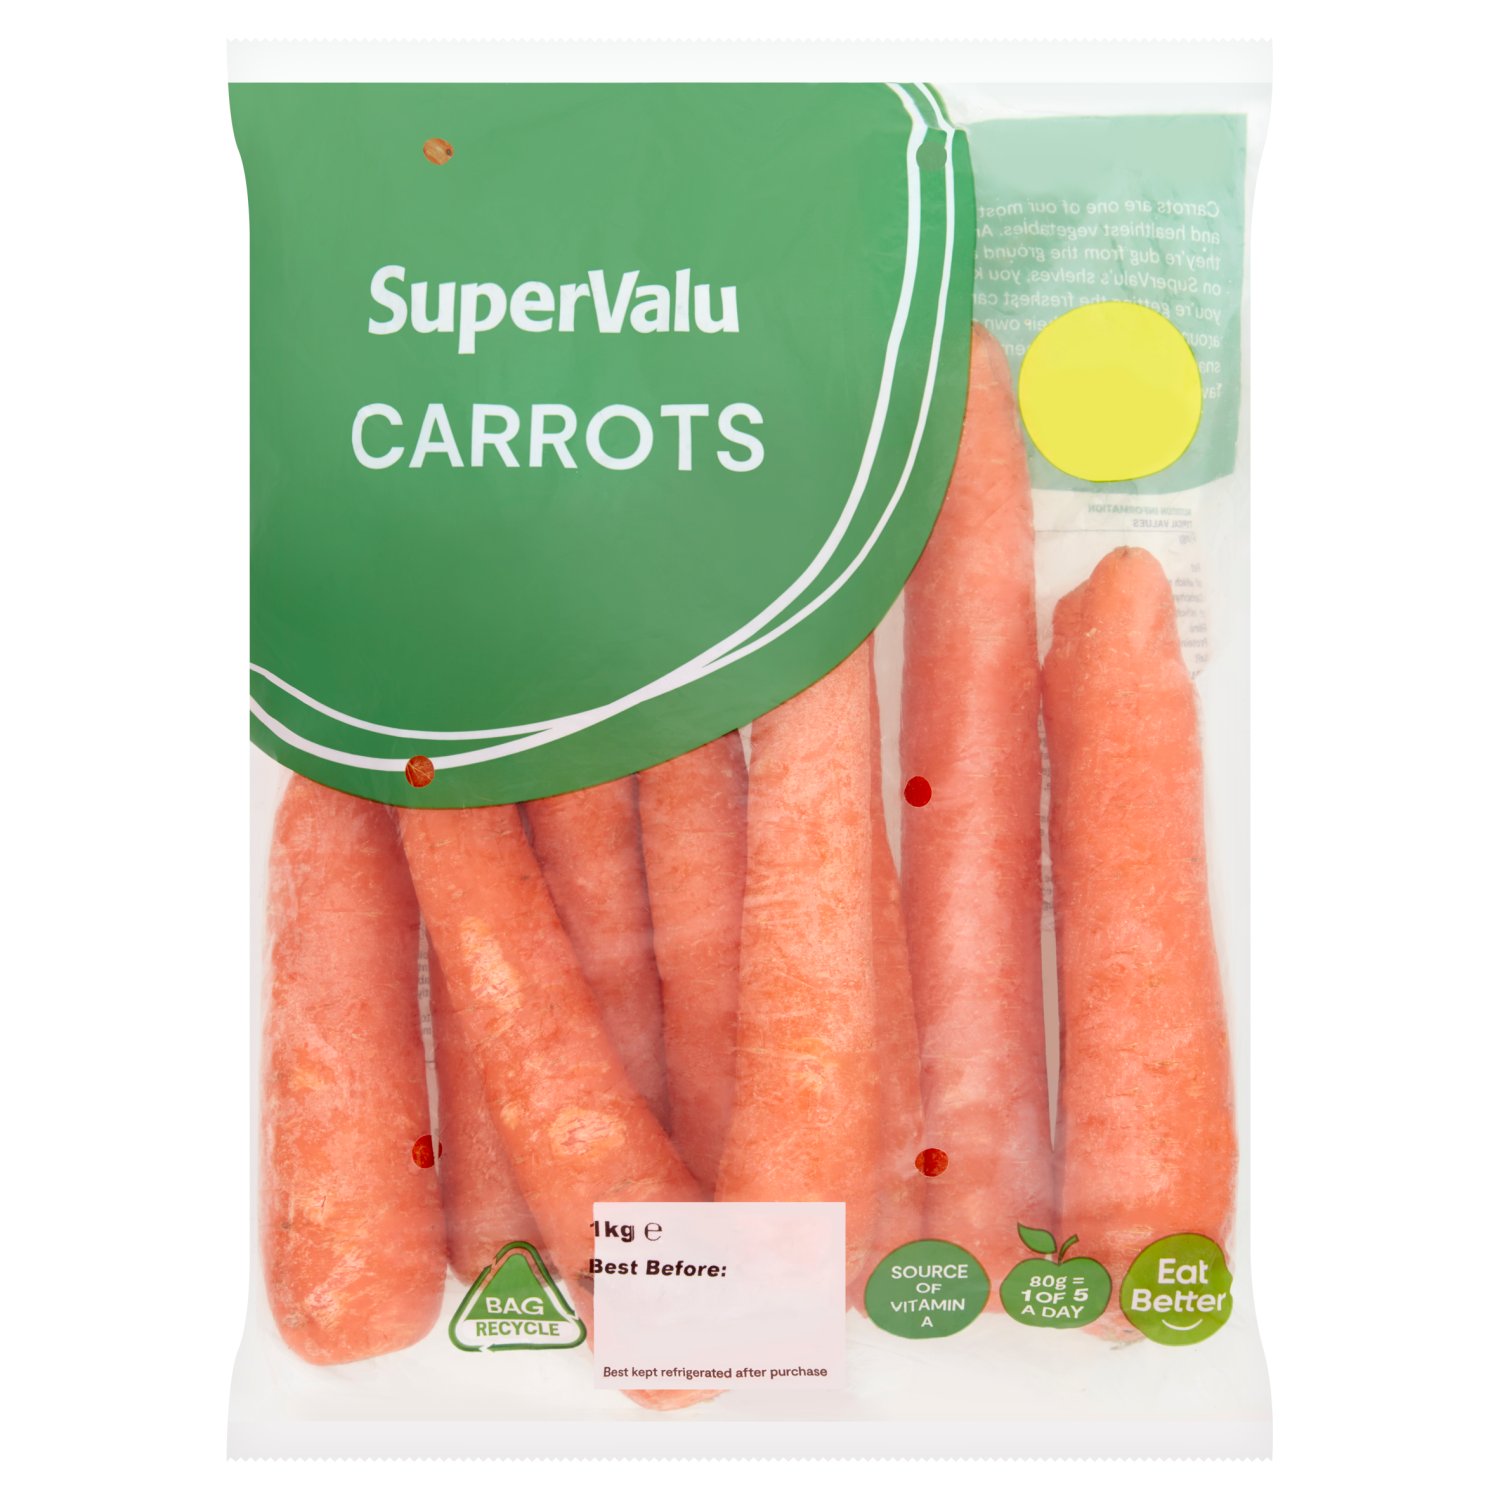 SuperValu Carrots (1 kg)